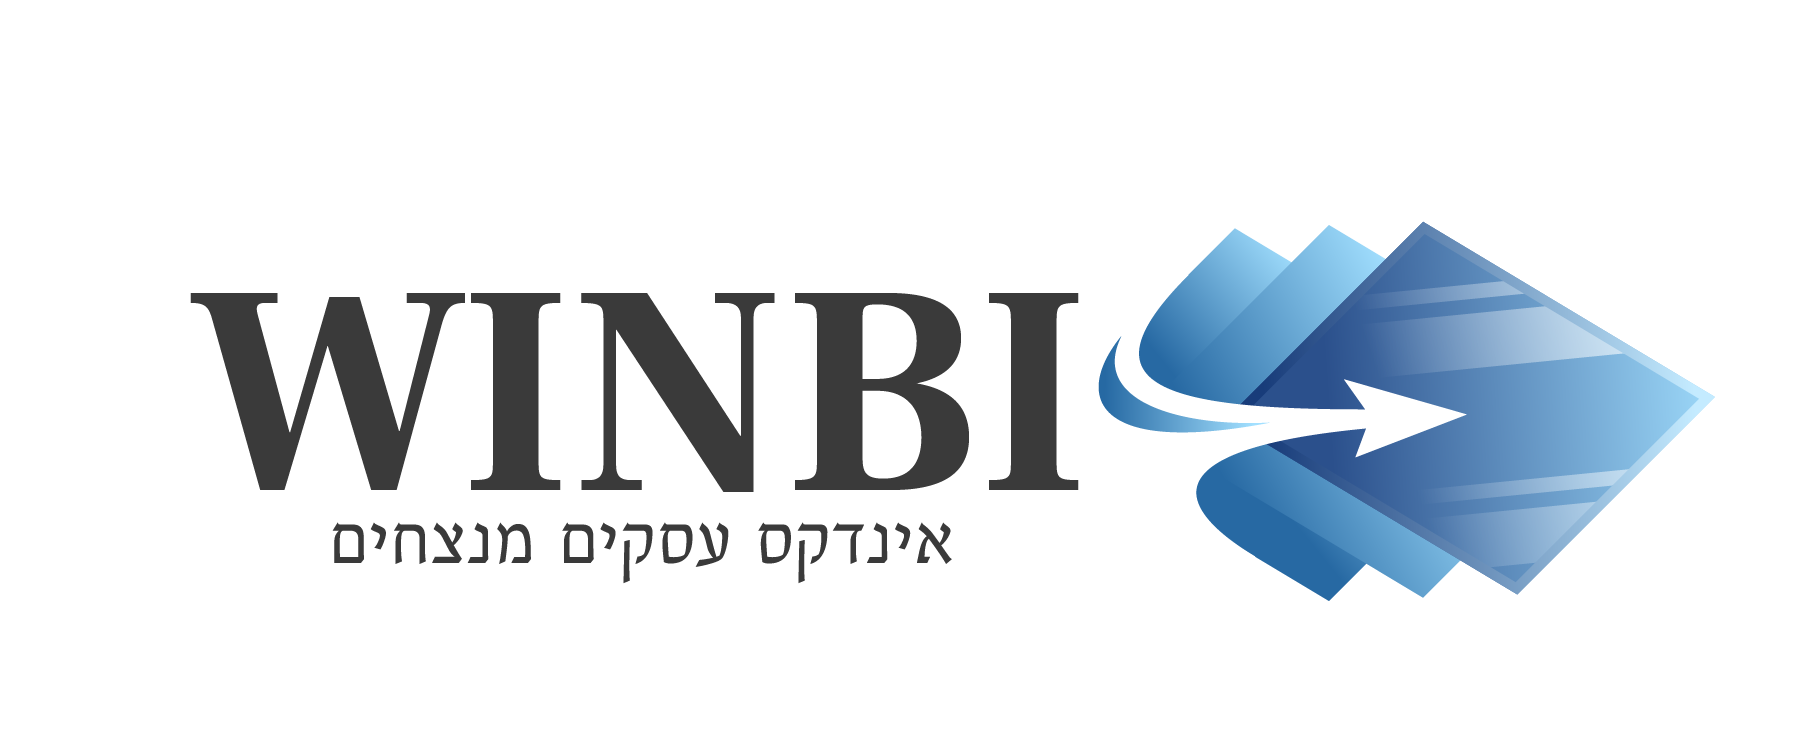 Winbi – אינדקס עסקים מנצחים